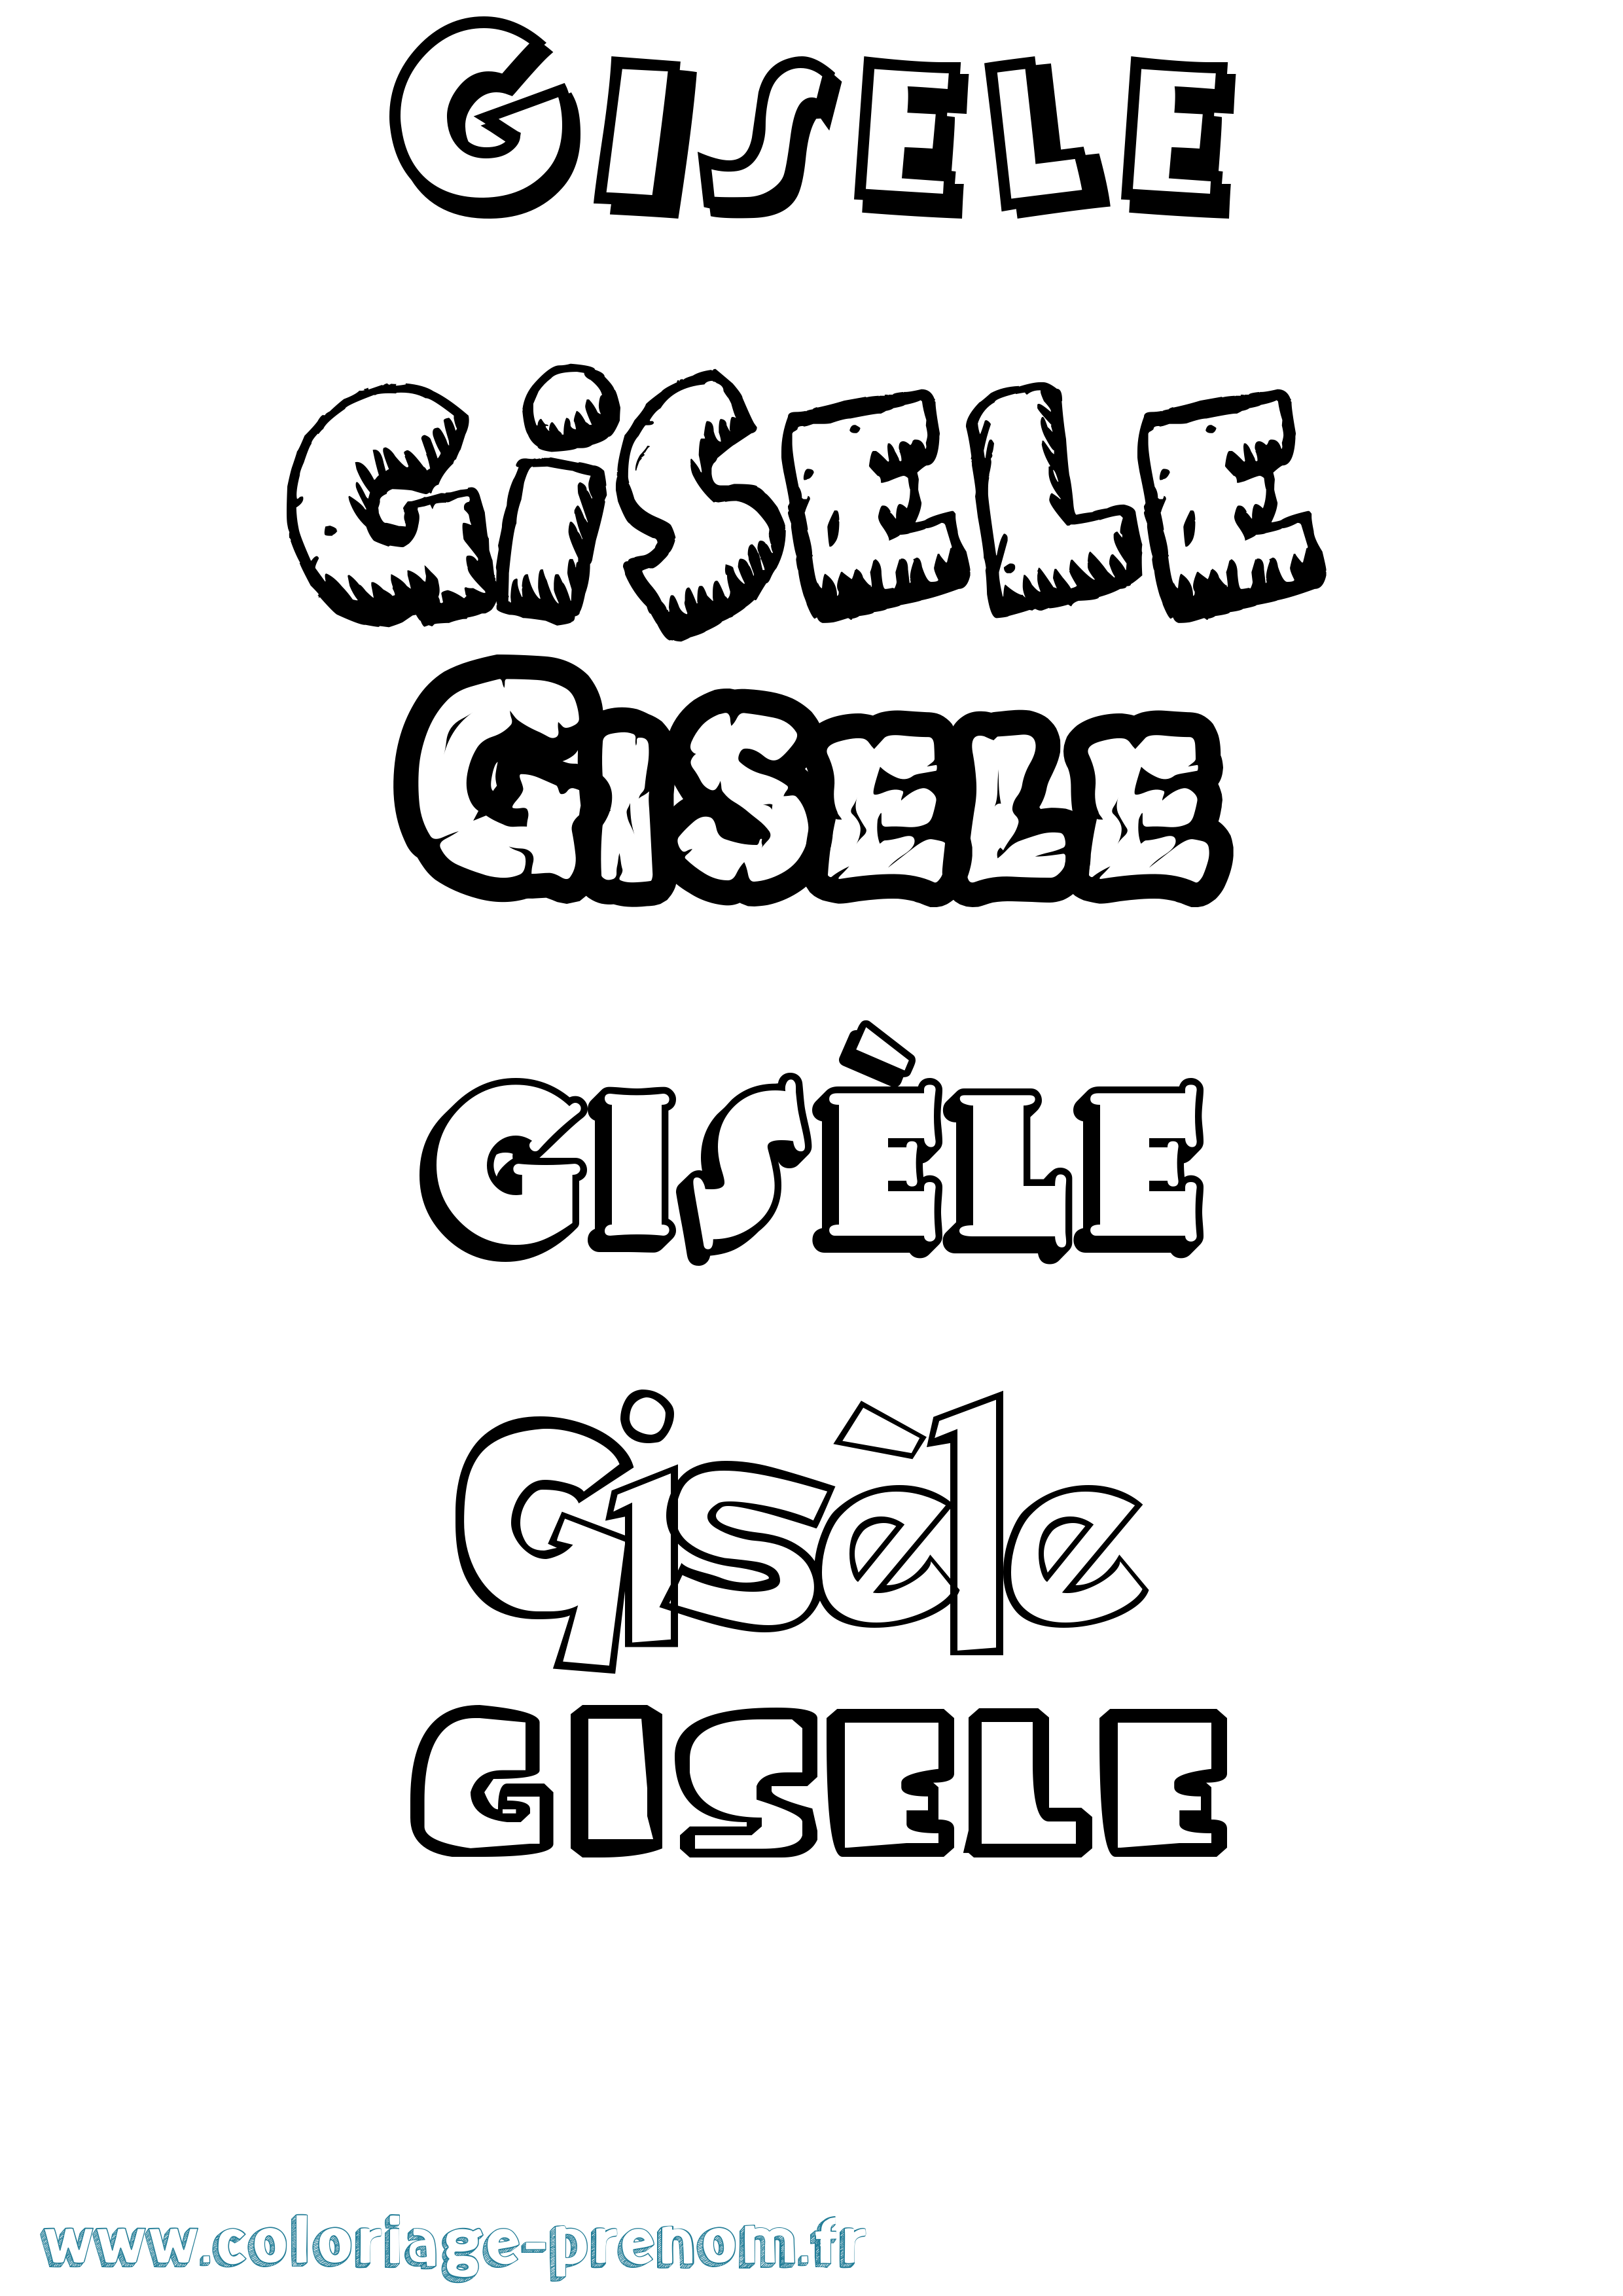 Coloriage prénom Gisèle Dessin Animé